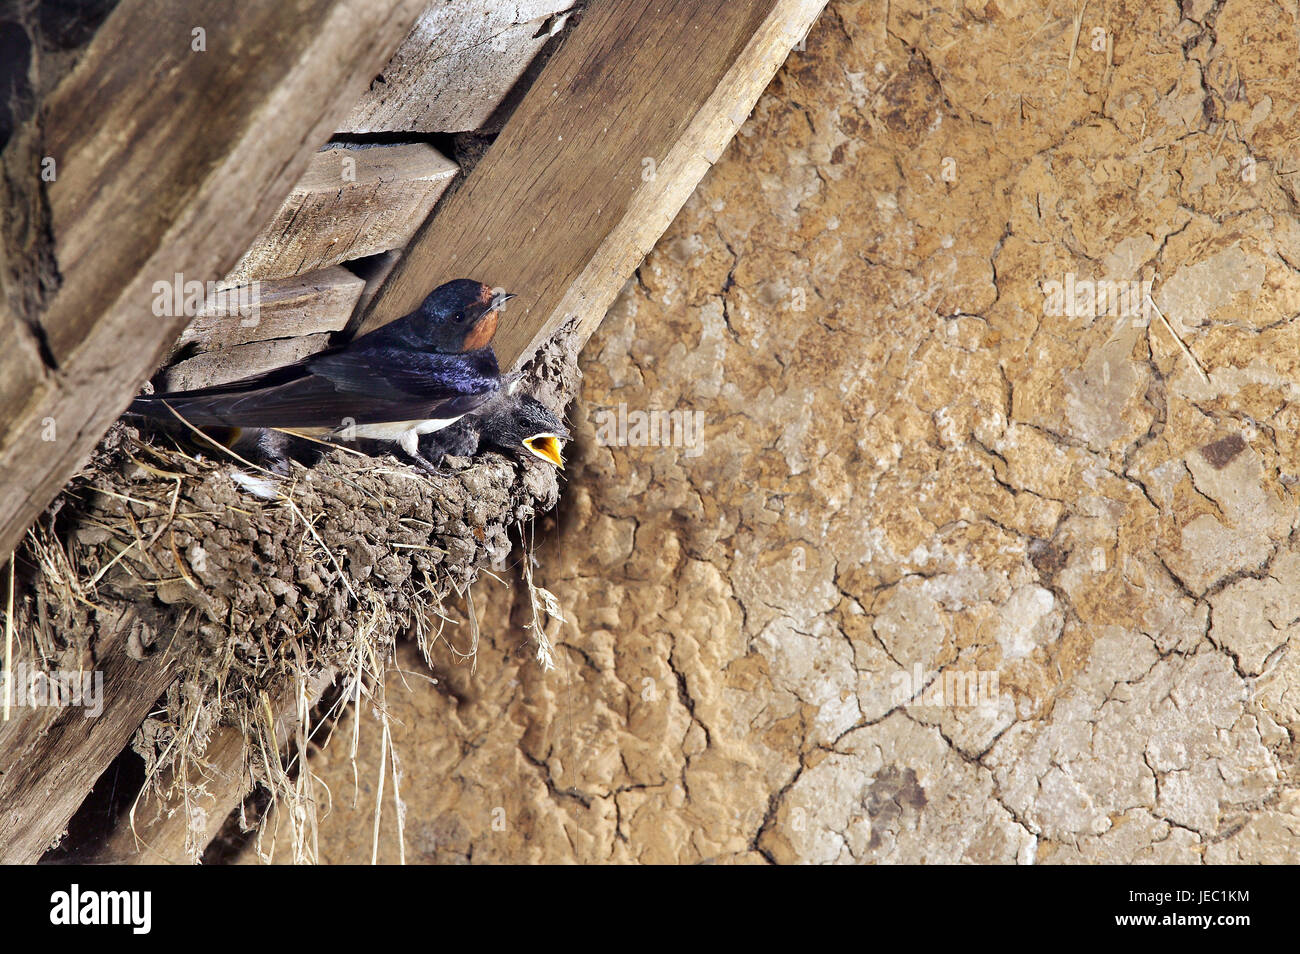 Trague alimenta los pájaros jóvenes, Hirundo rustica, Foto de stock